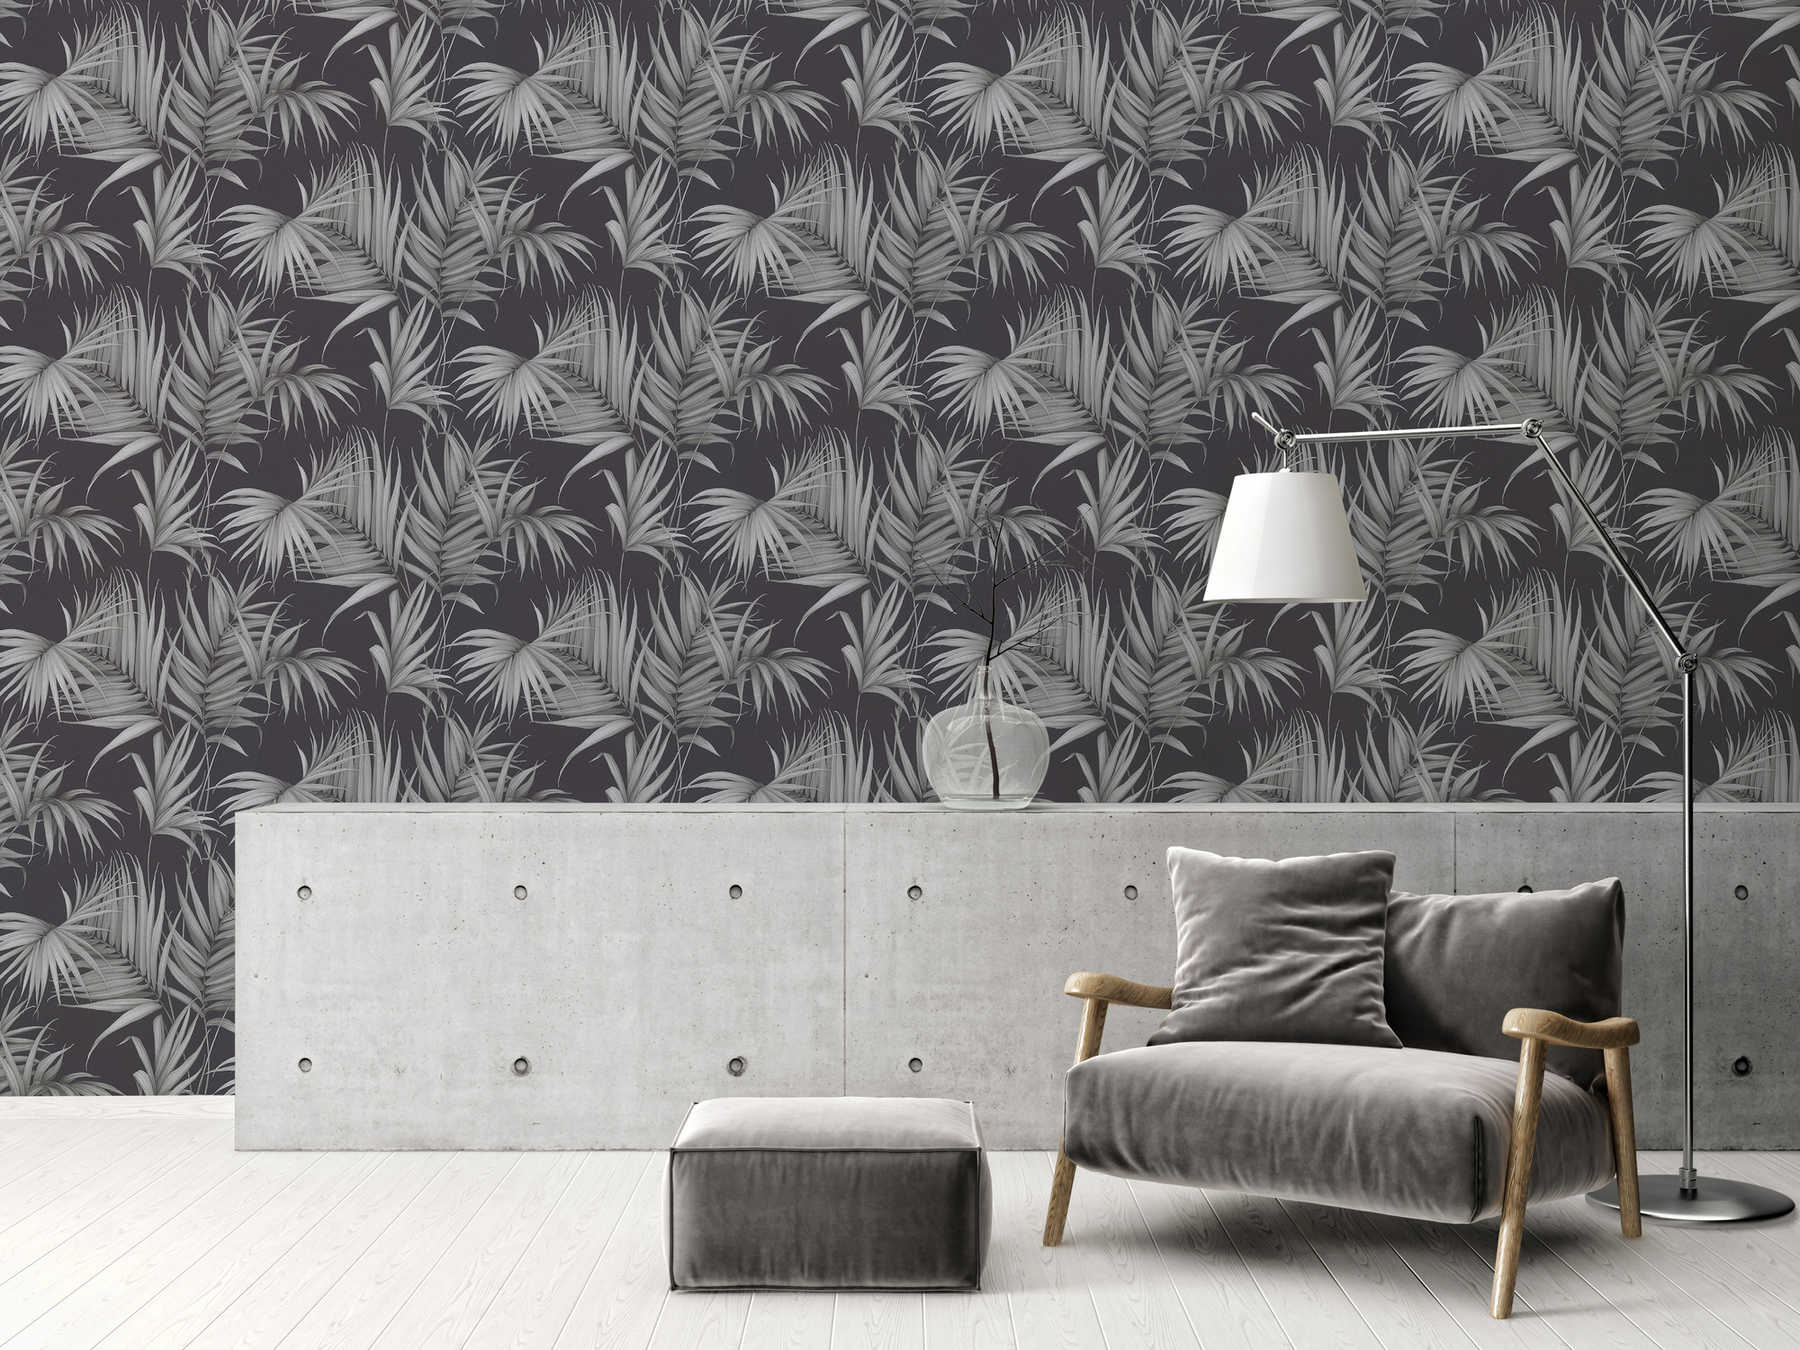             Tropisch behang met varenbladeren - grijs, zwart
        